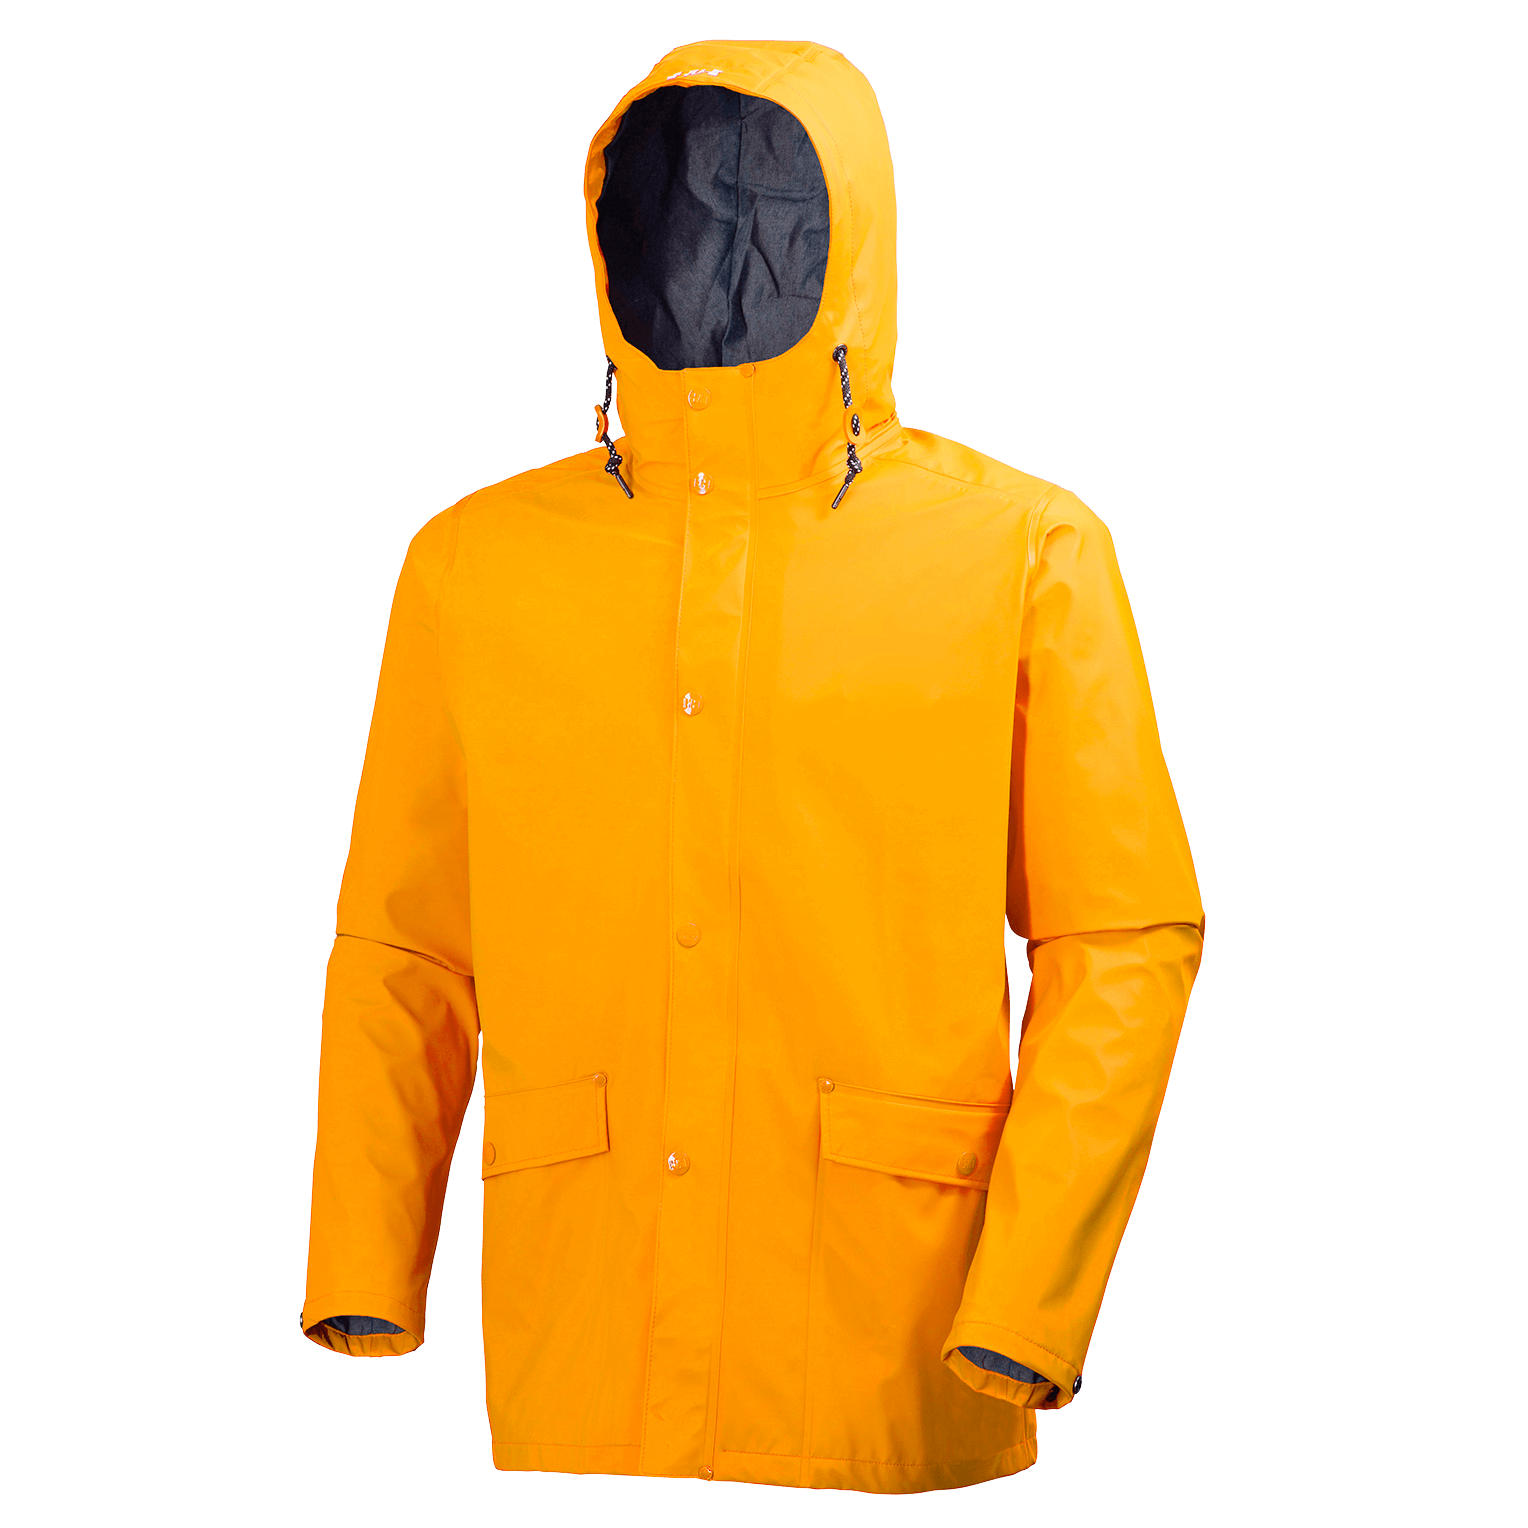 Raincoat Transparent Image